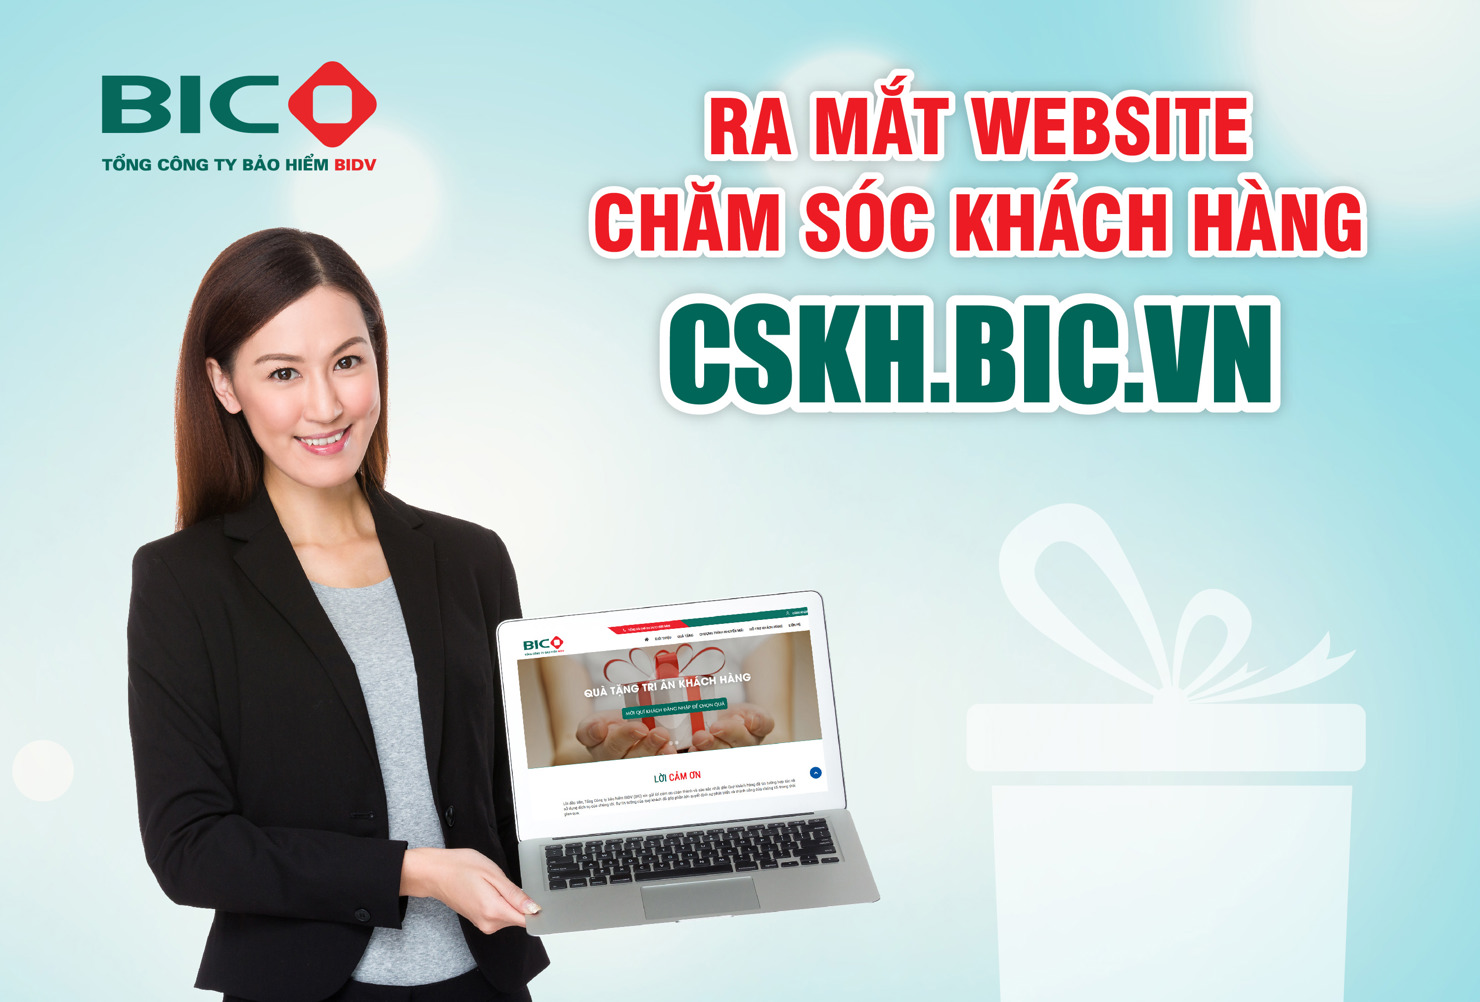 BIC vừa ra mắt website chăm sóc khách hàng trực tuyến cskh.bic.vn